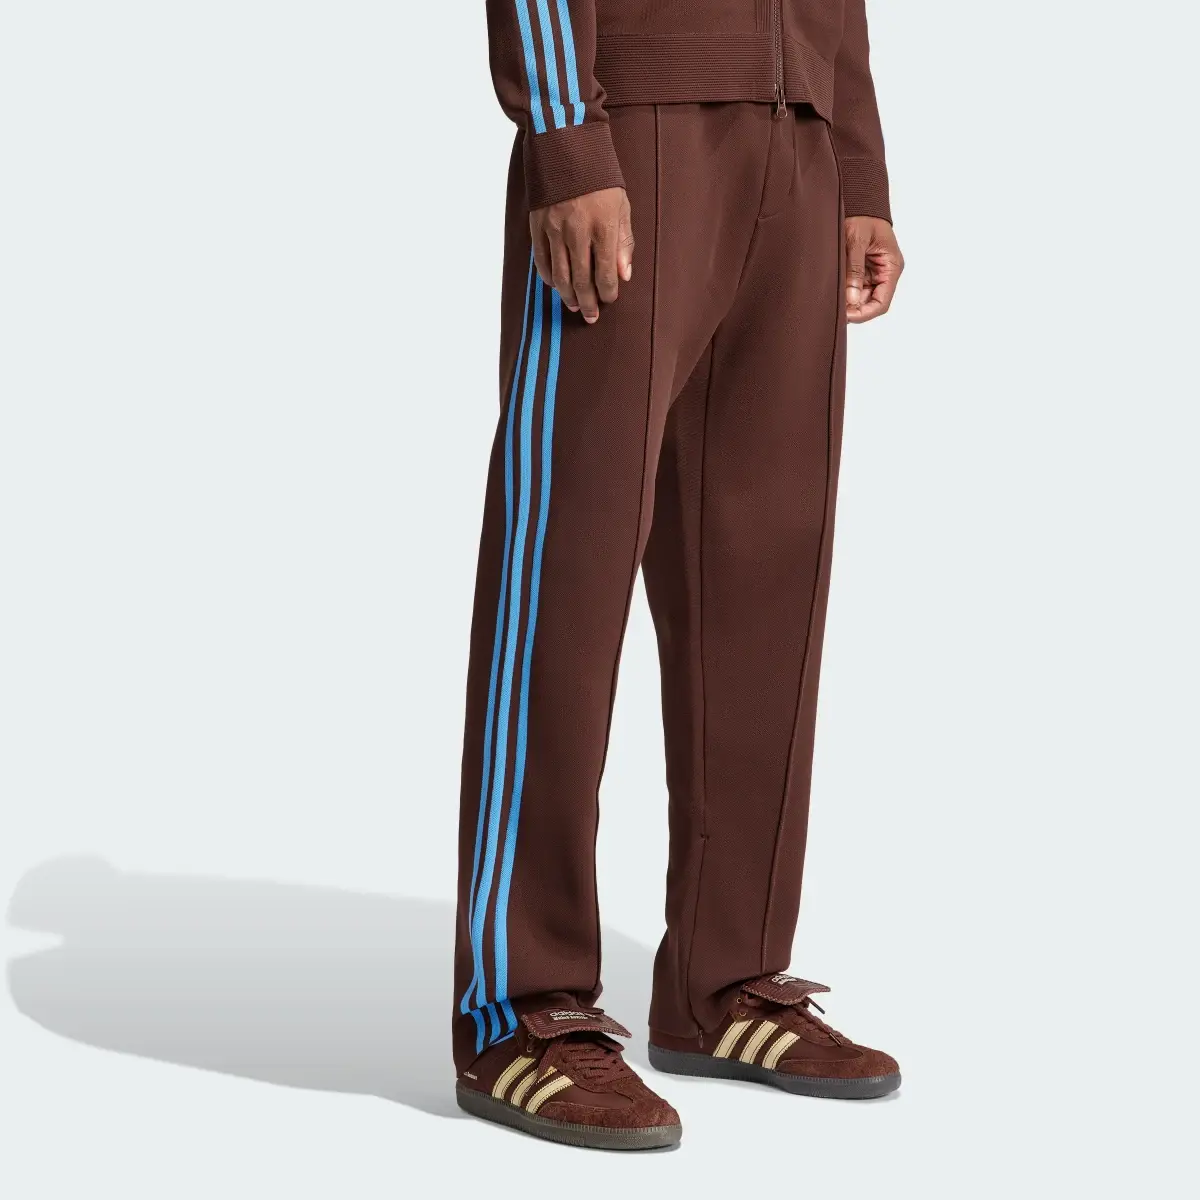 Adidas Wales Bonner Track Suit Pants. 3